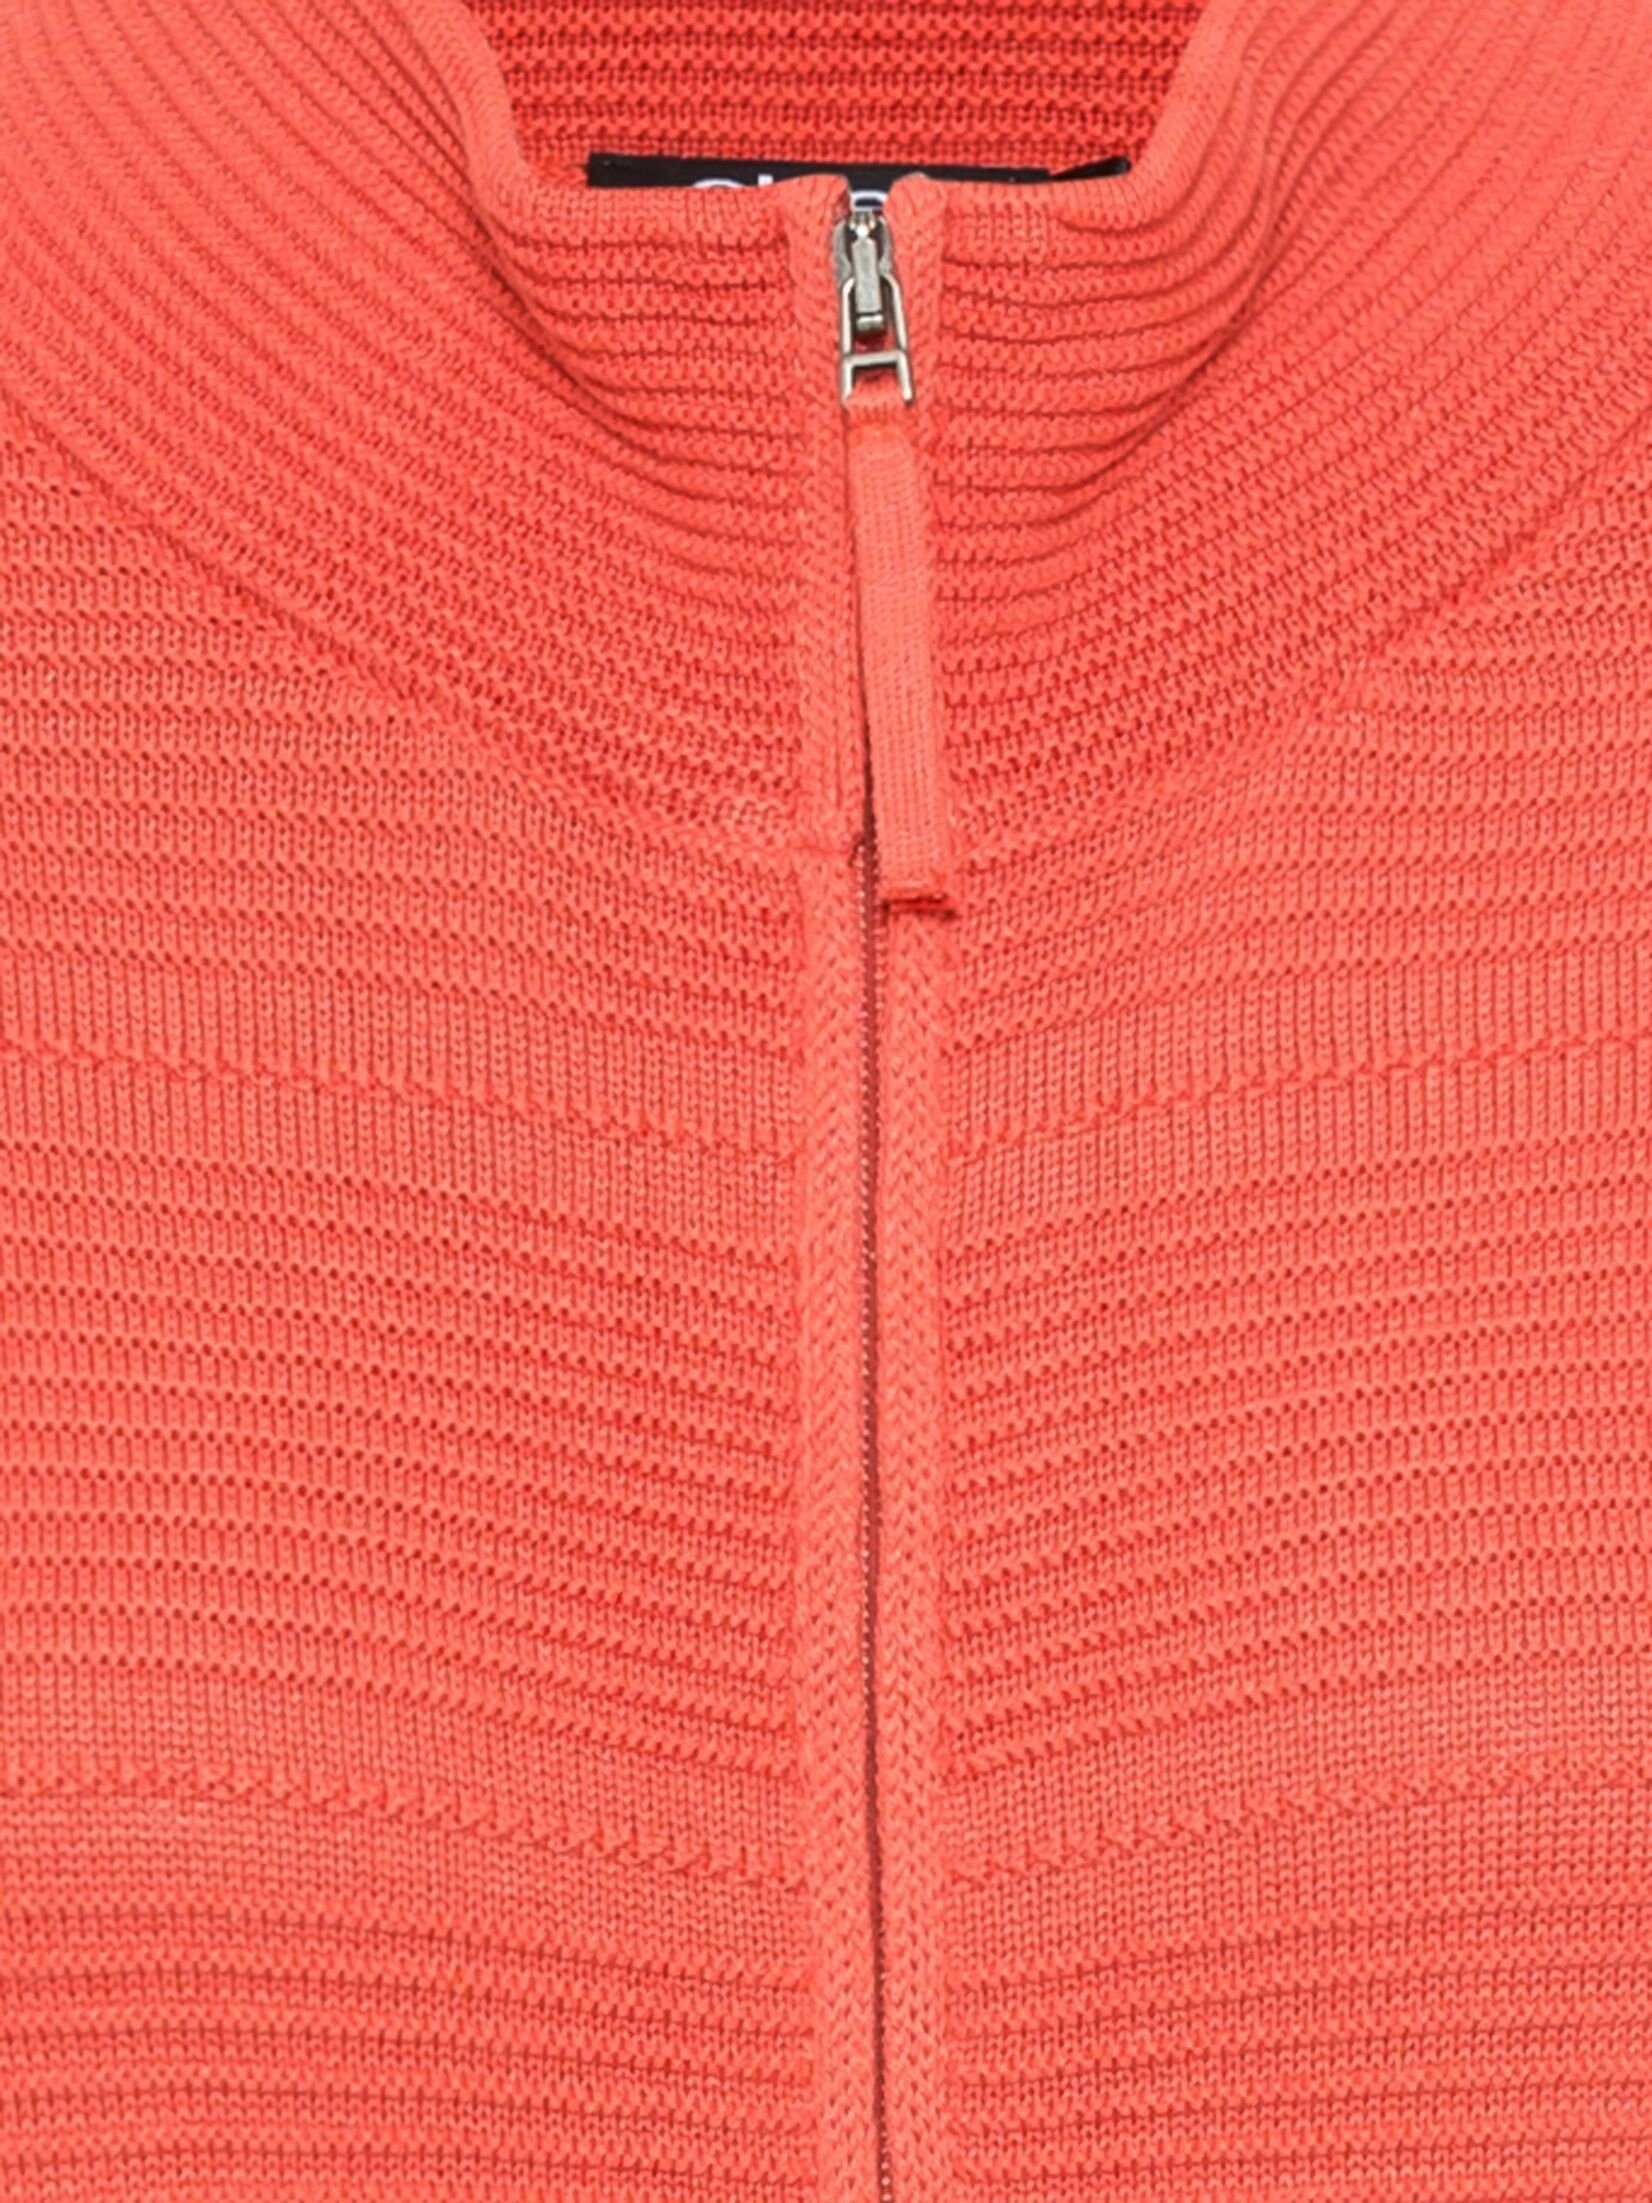 Cardigan Spiced und Design Eva Olsen Reißverschluss im mit unifarbenen Orange